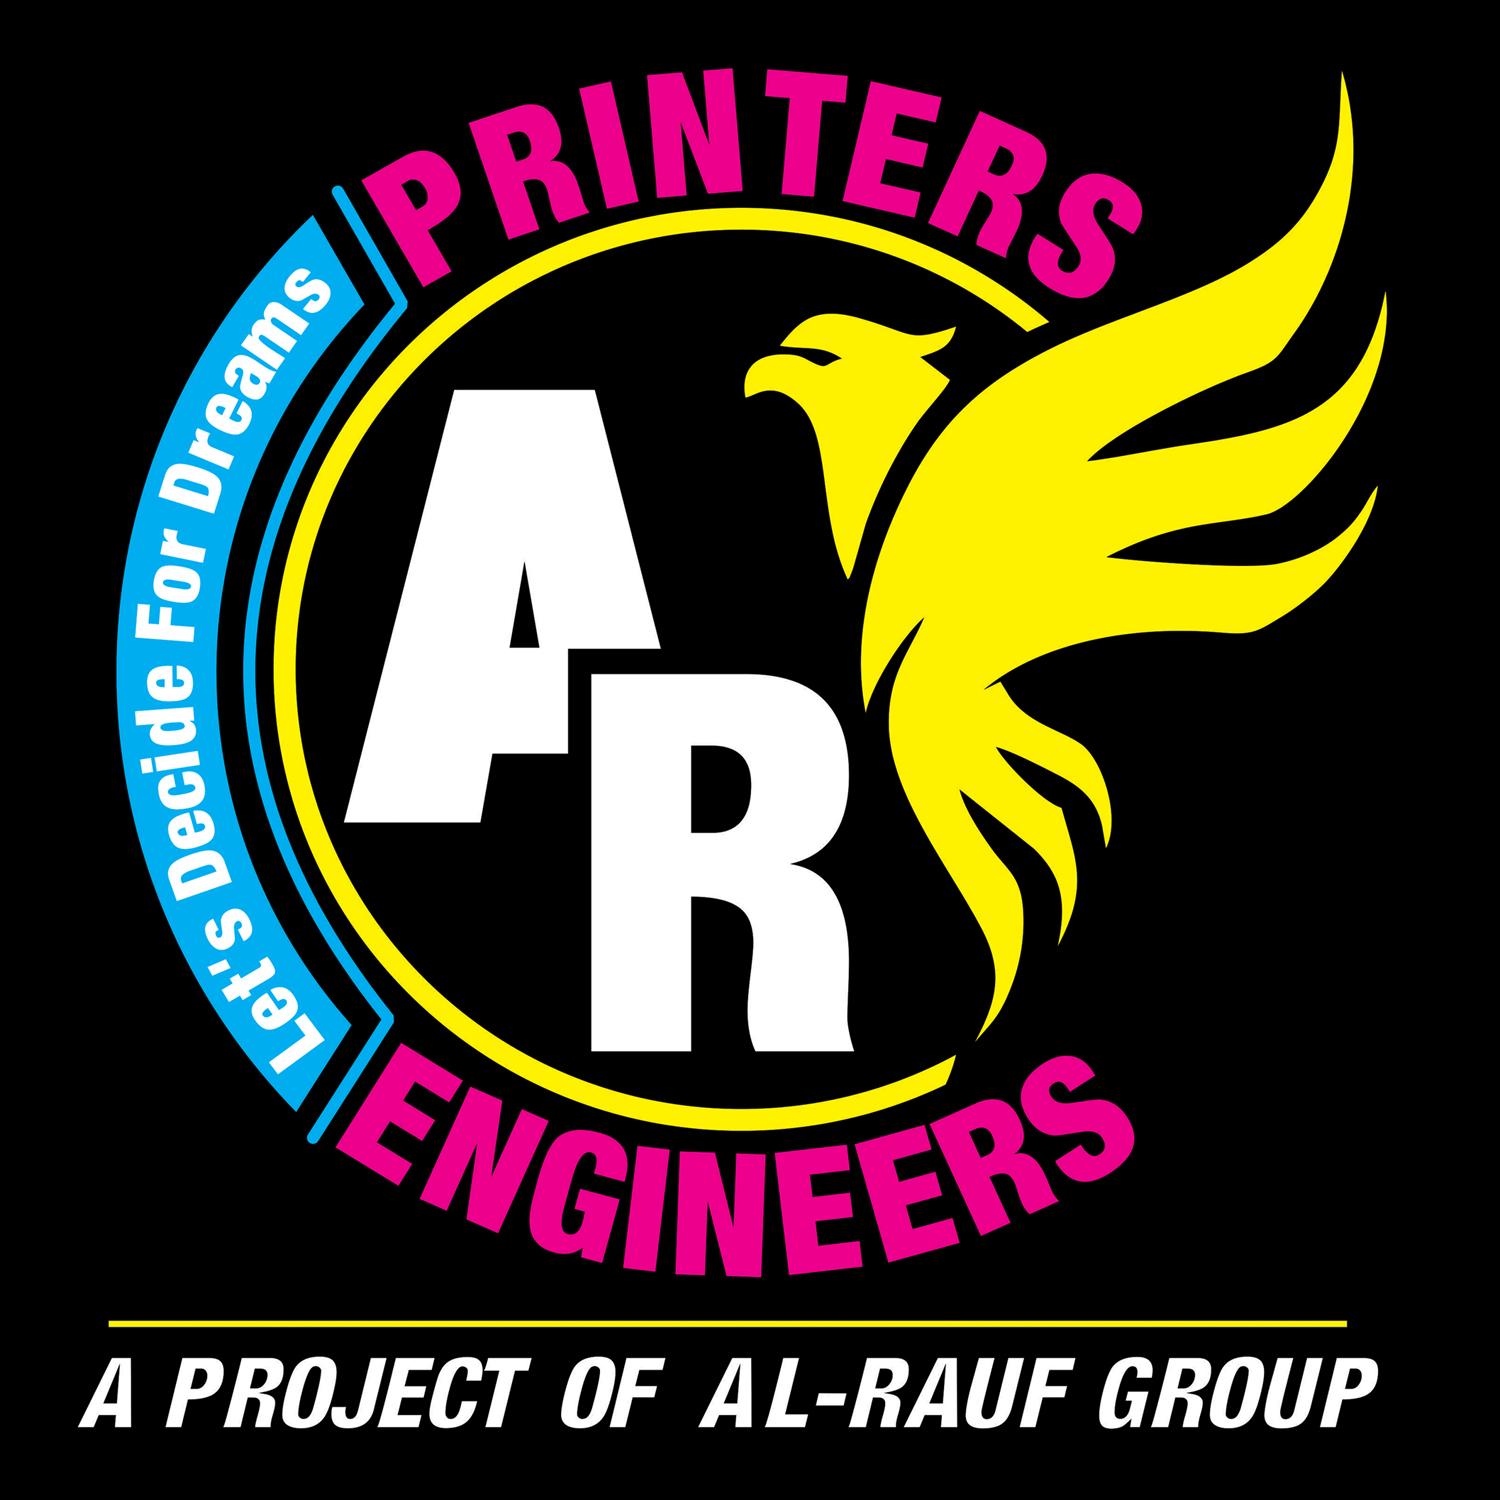 AR Printers Engineers